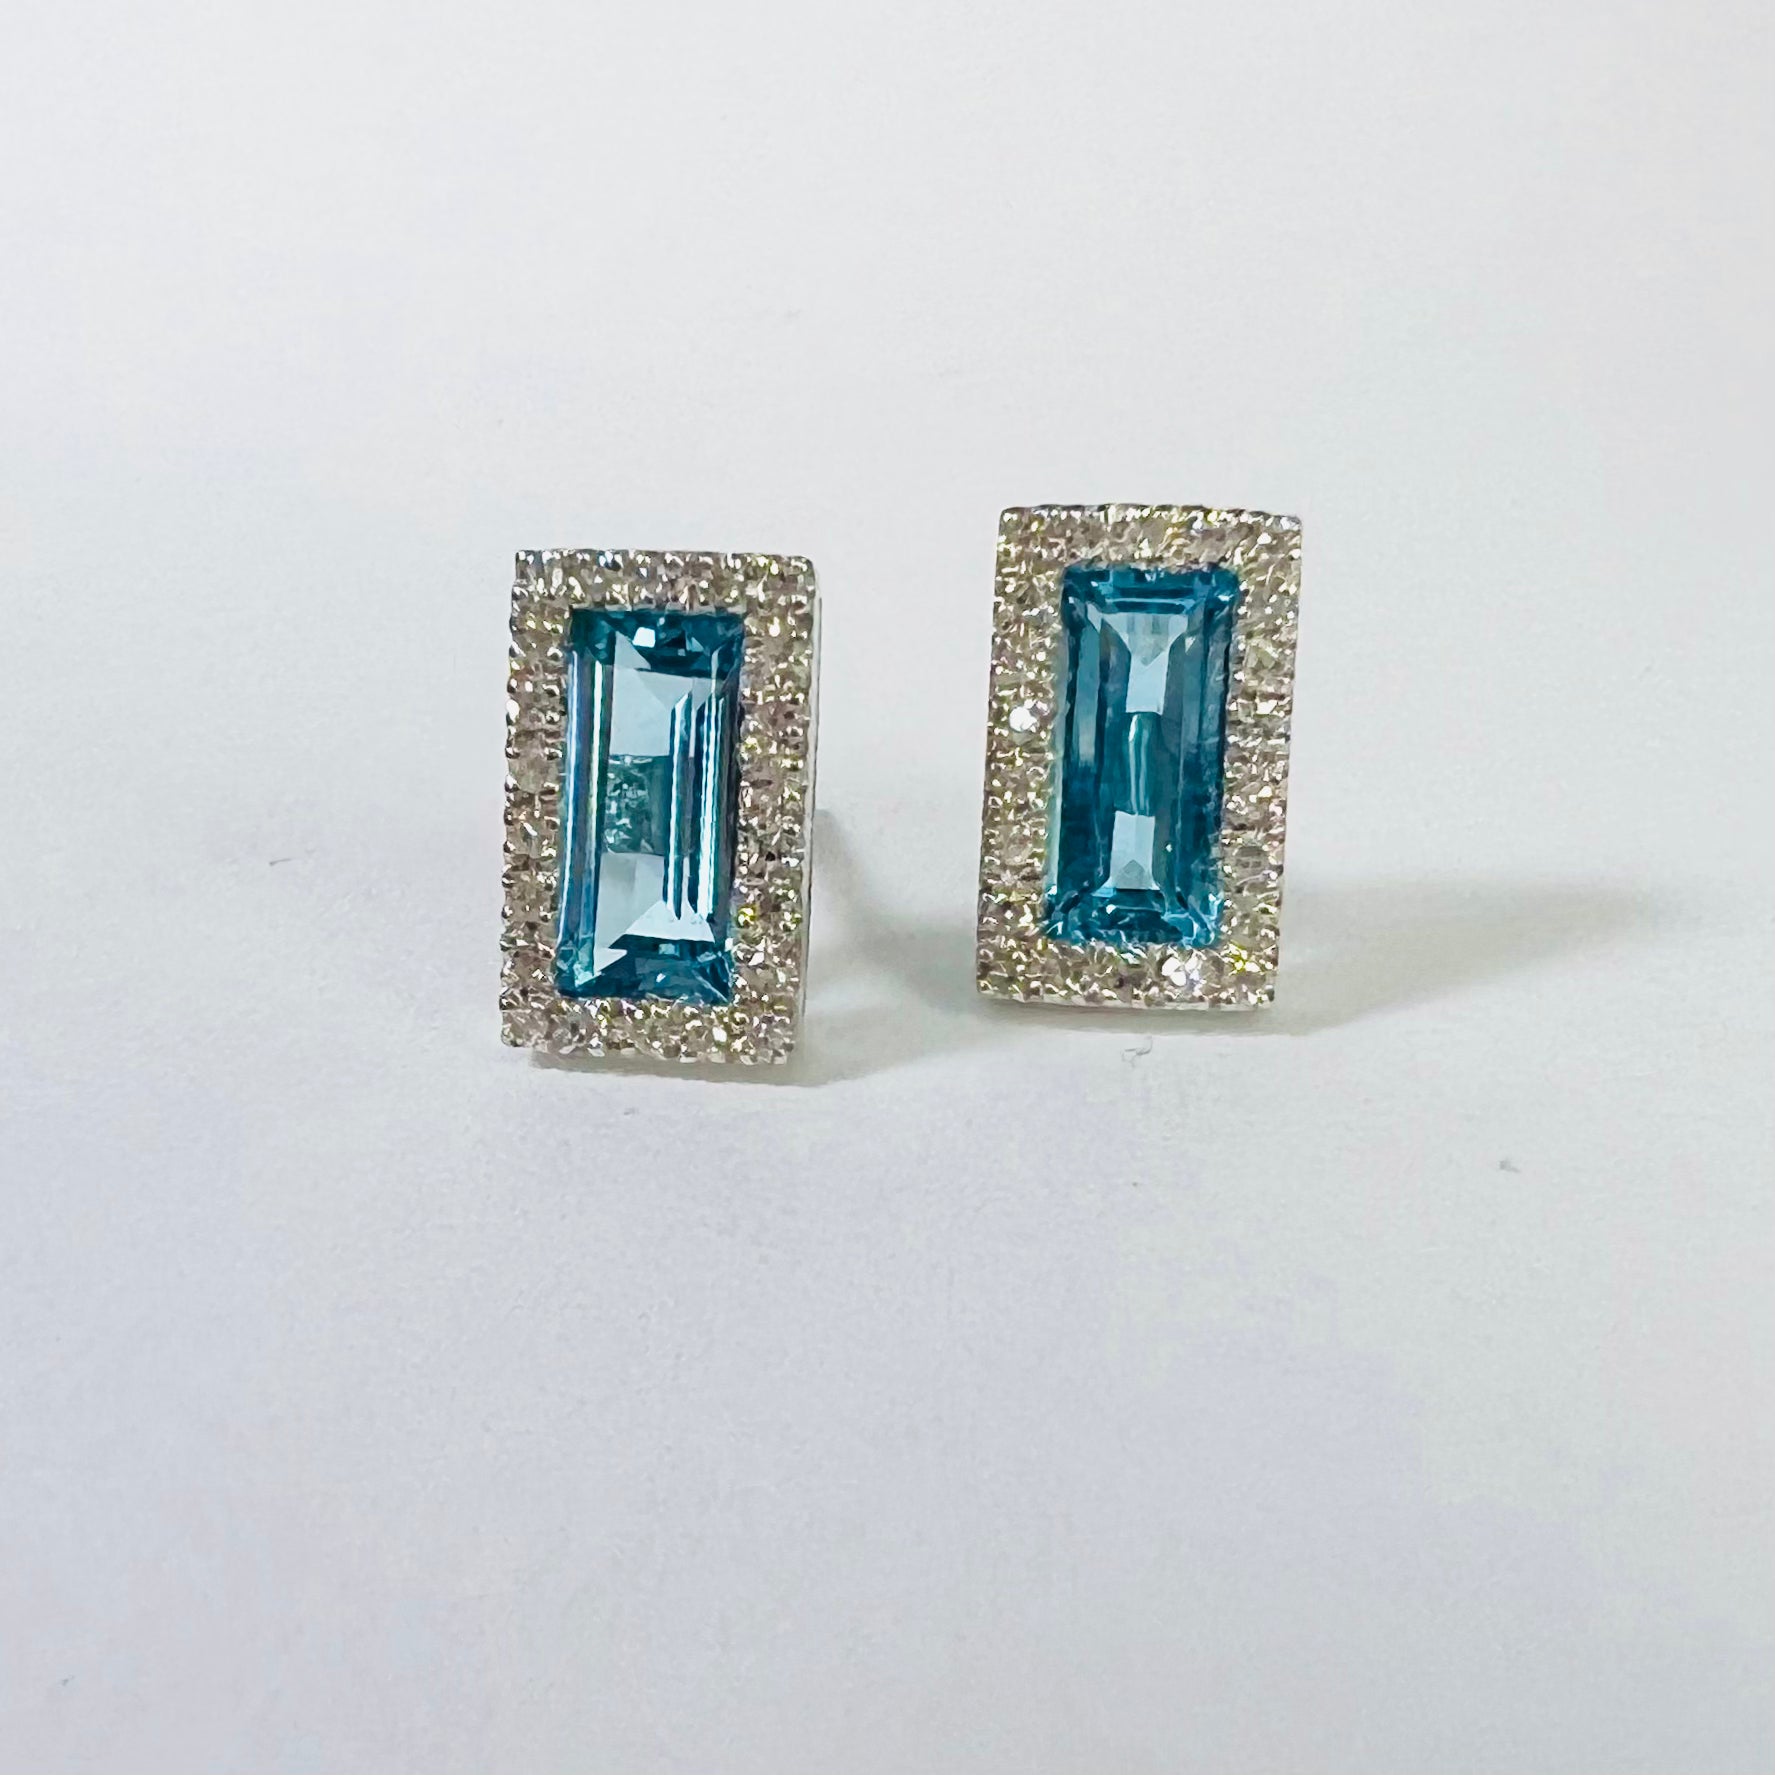 14K White Gold Diamond & Topaz Baguette Earring Studs 9x5mm